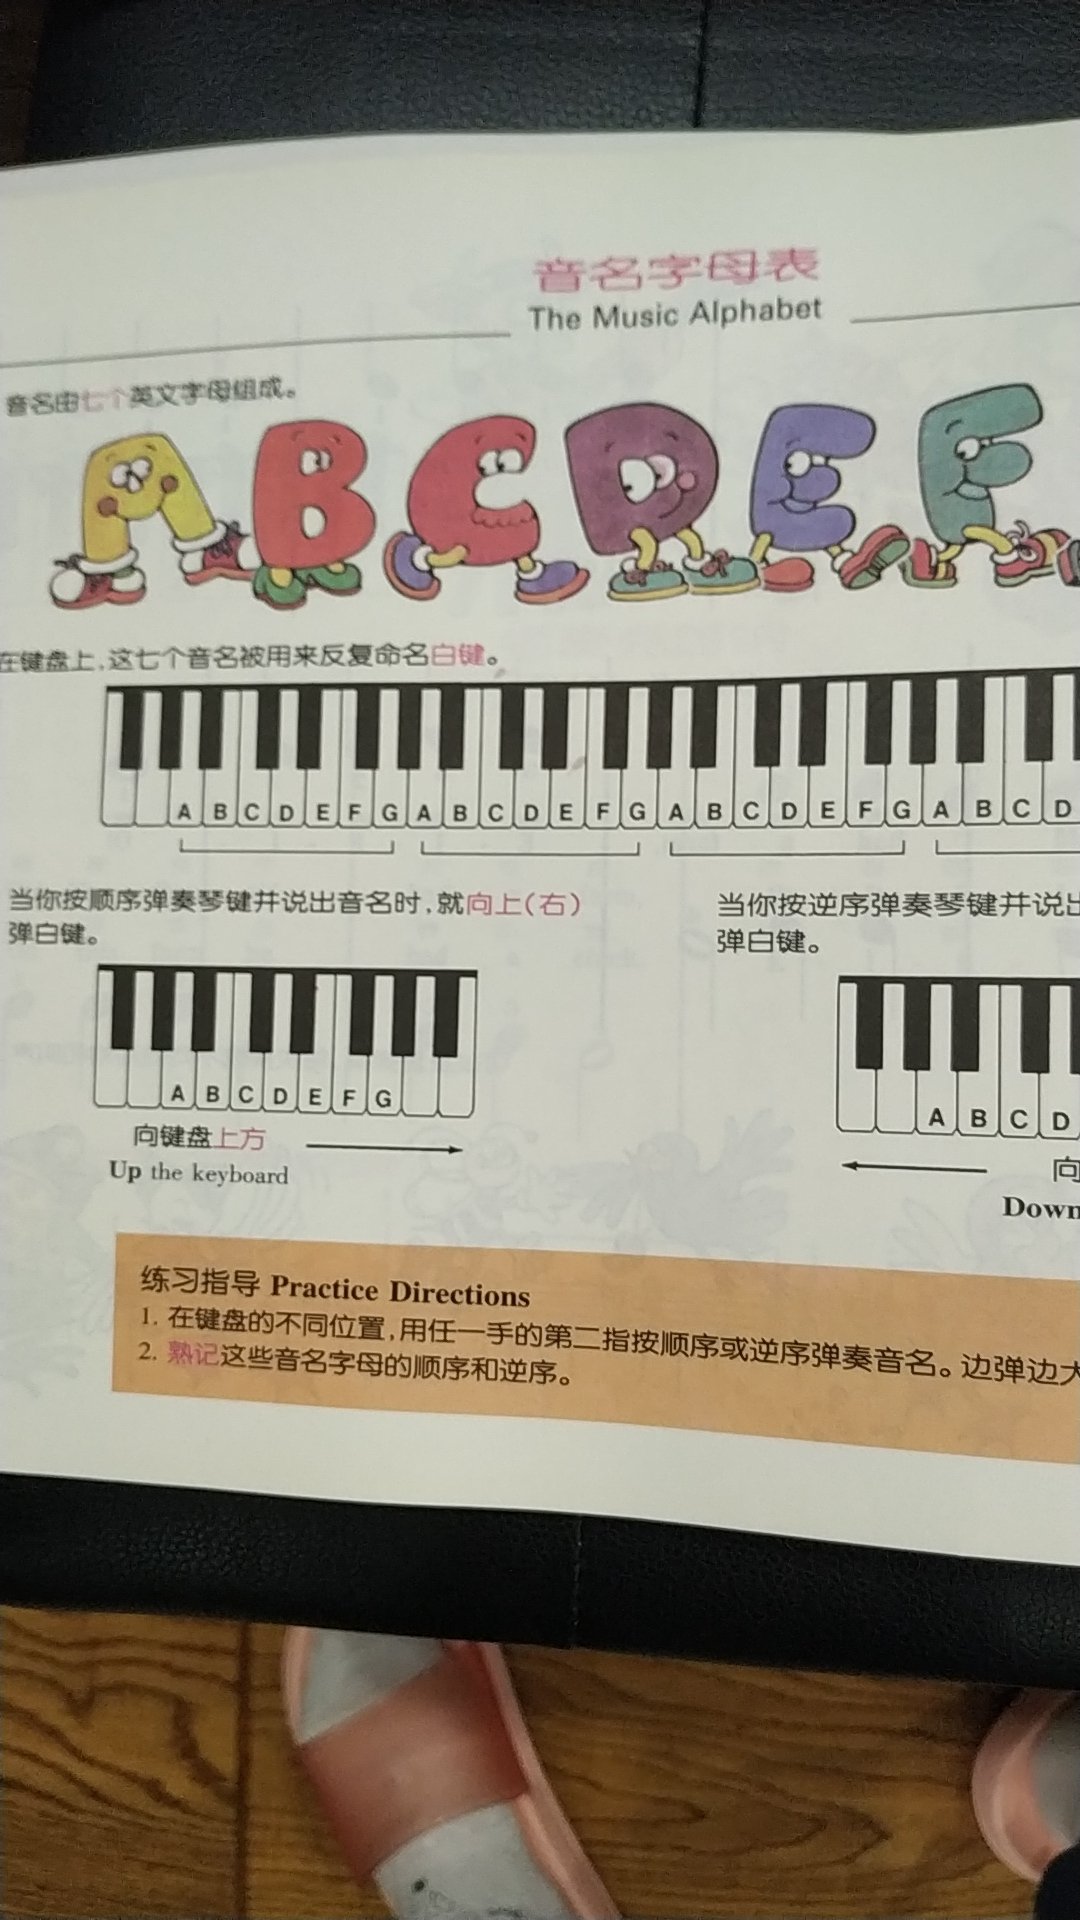 钢琴老师要求买的，和菲伯尔类似，适合幼儿。印刷不错。